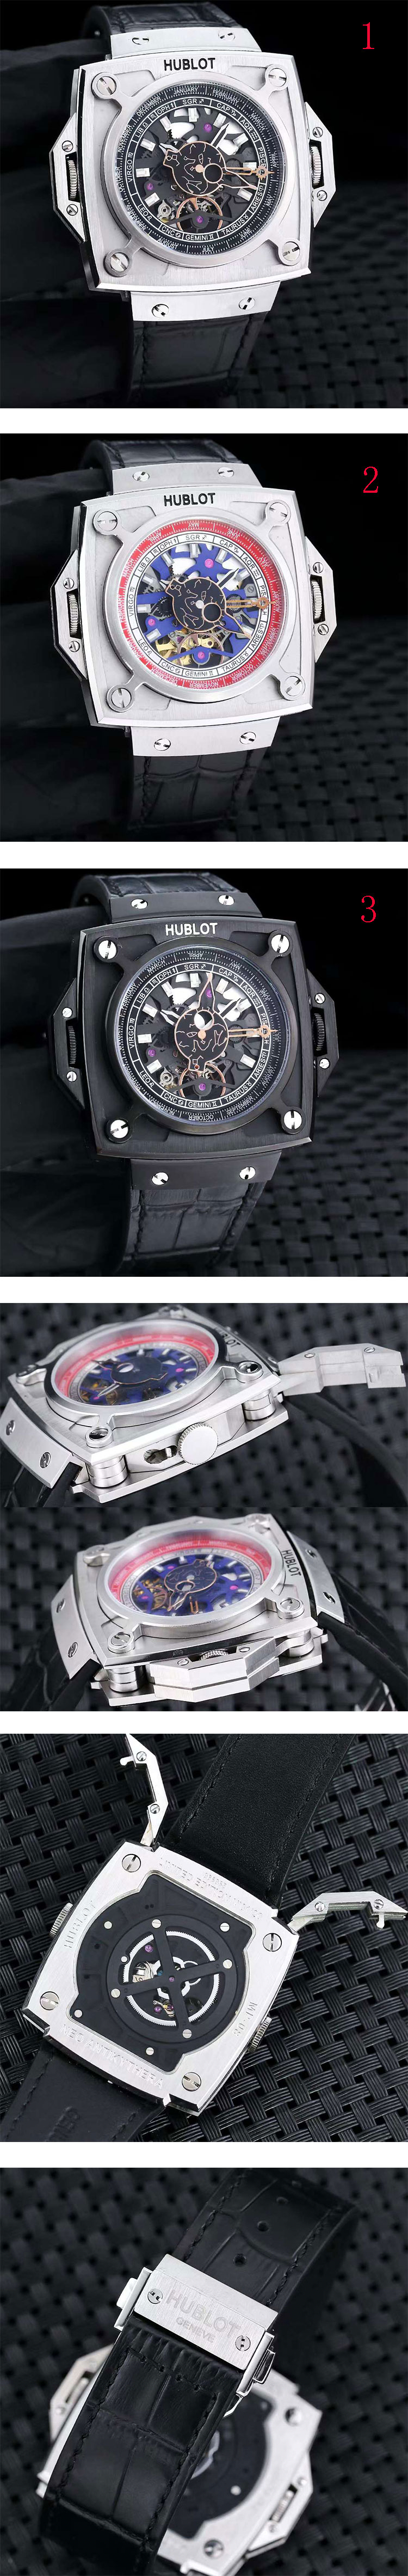 ウブロスーパーコピー時計MP-08 アンティキティラ・サンムーン 908.NX.1010.GR